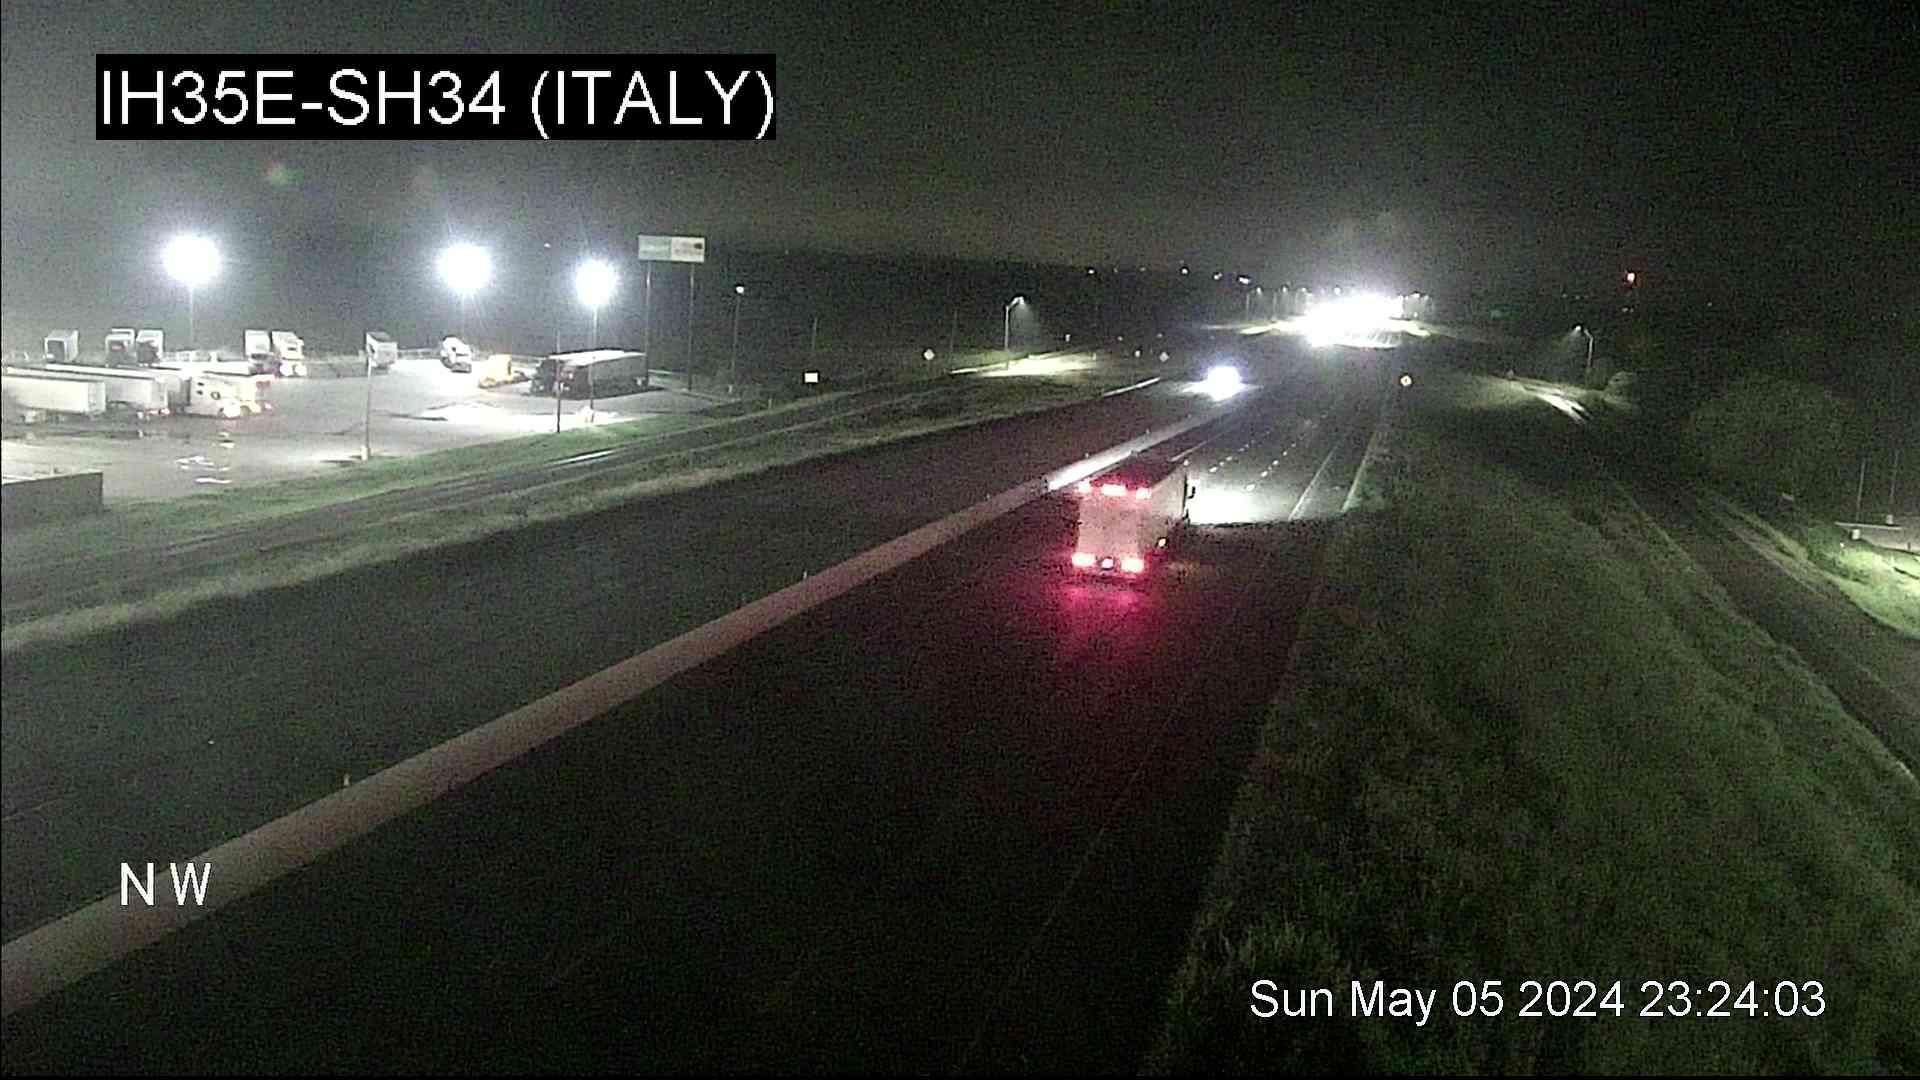 Italy › North: I-35E @ SH 34 Traffic Camera